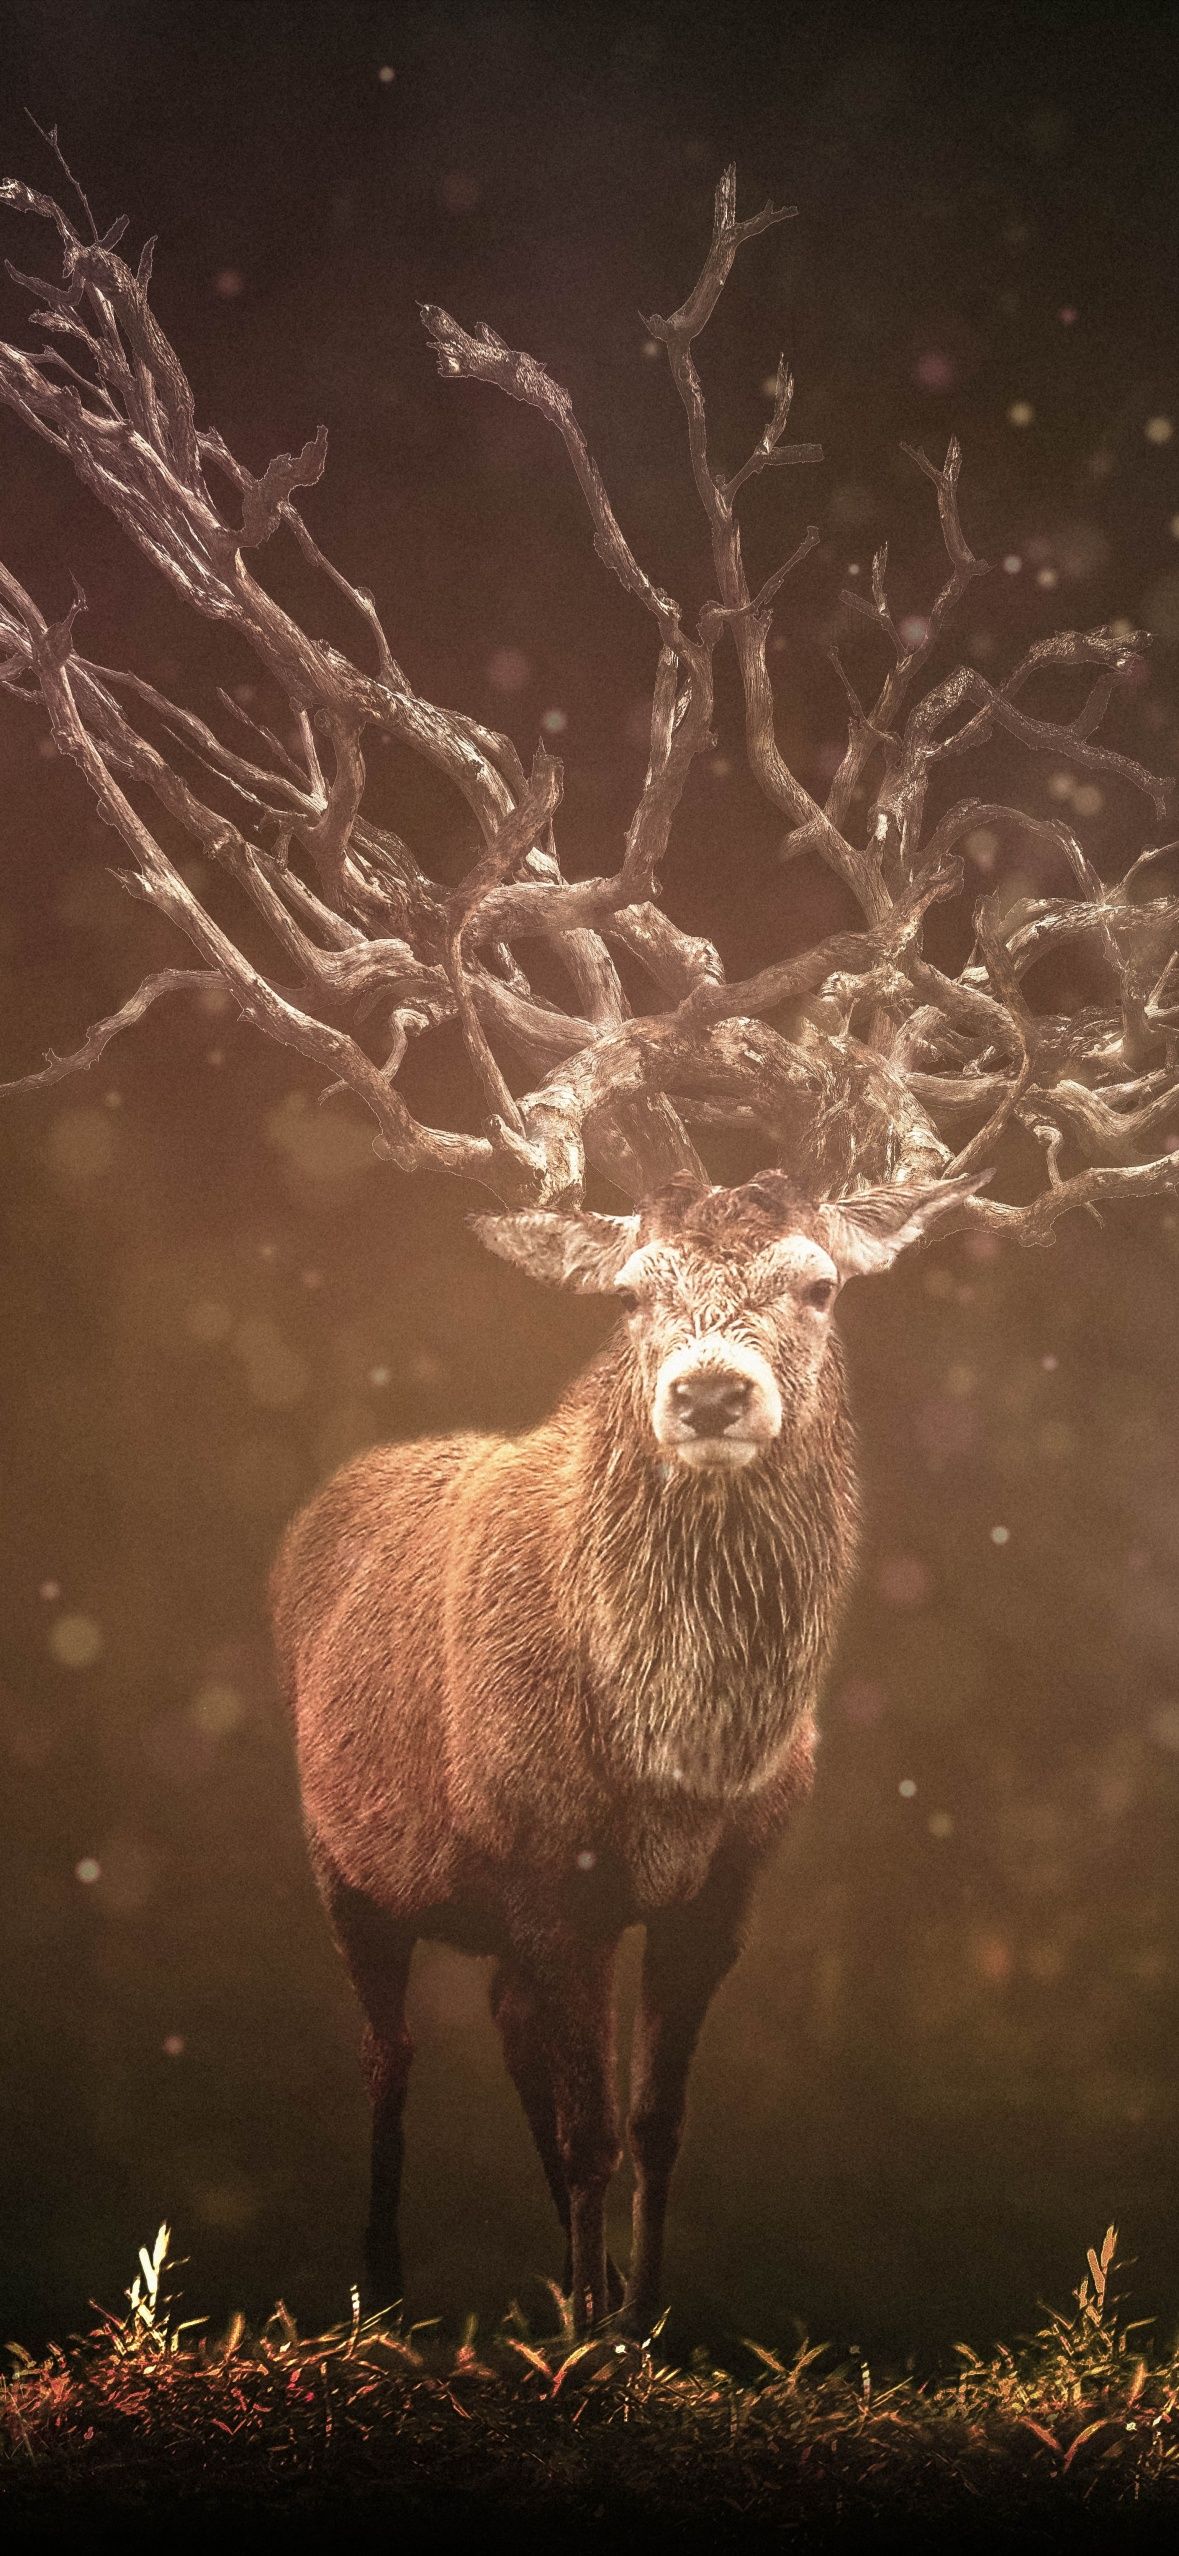  Hirsch Hintergrundbild 1179x2556. Hirsch Wallpaper 4K, Deer, Forest, Sun rays